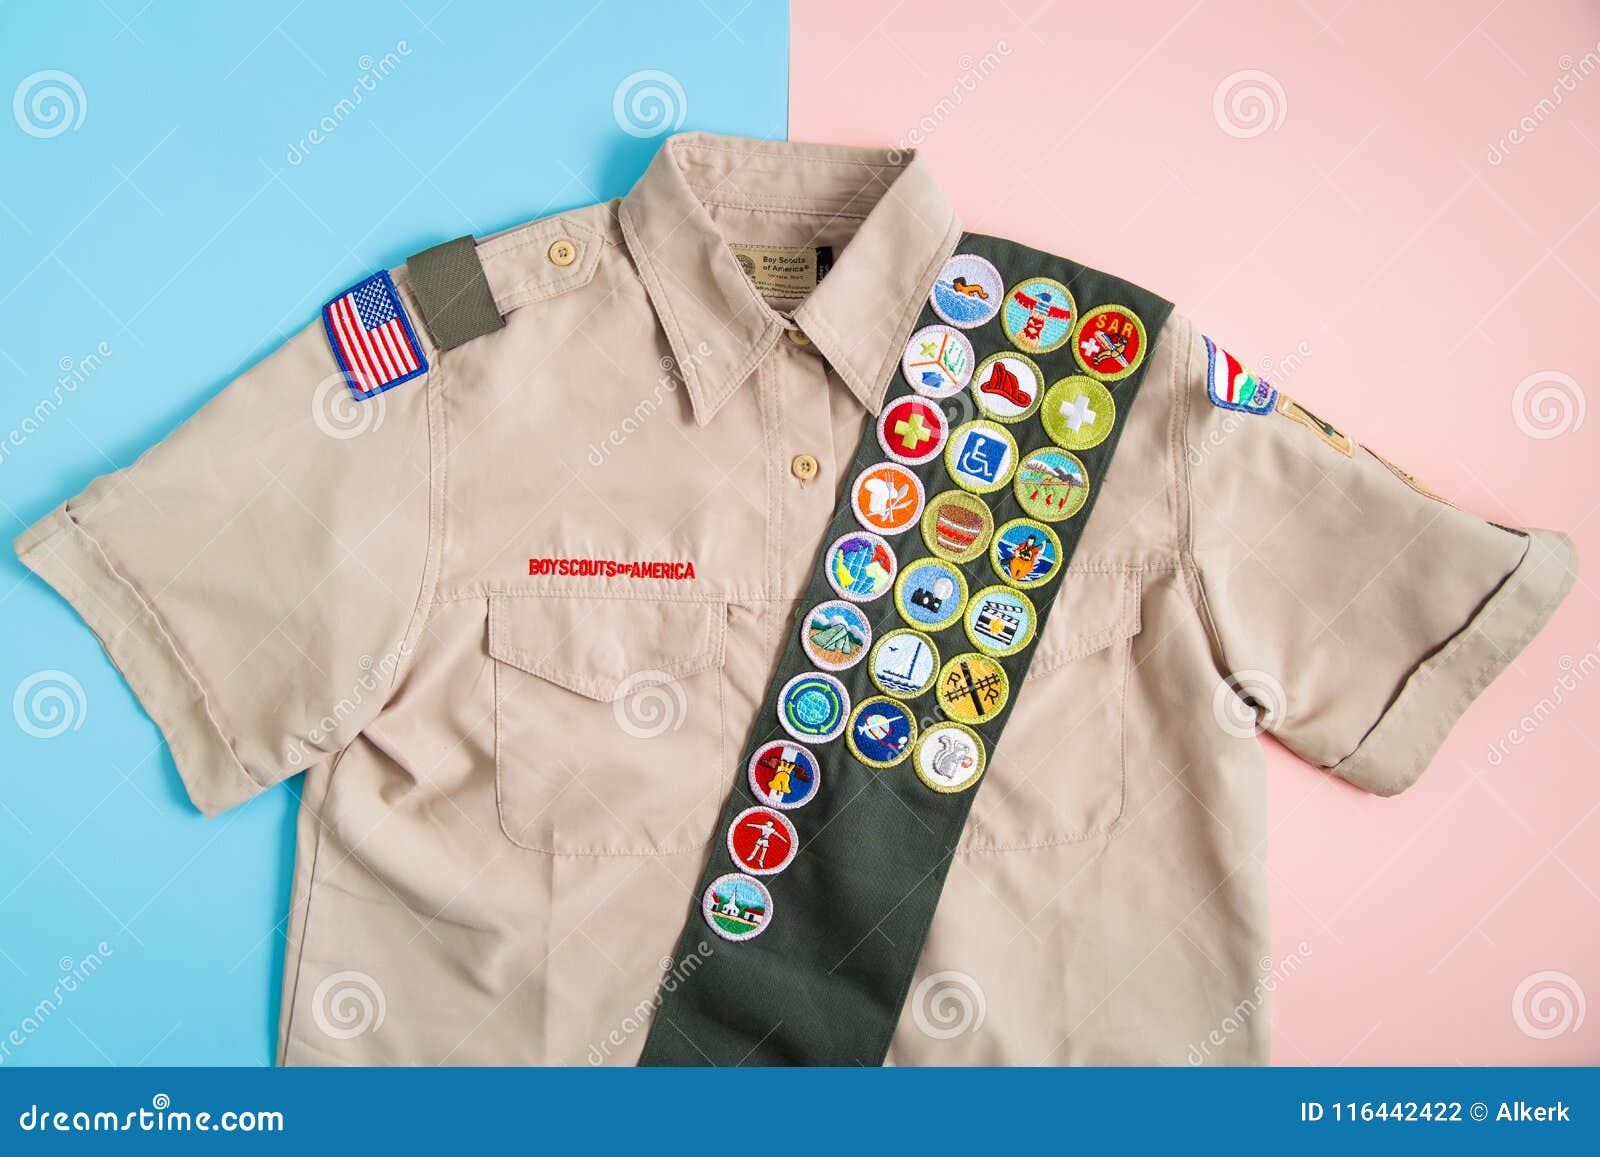 BSA-Uniform Auf Rosa Und Blau Redaktionelles Stockfotografie - Bild von  blau, schärpe: 116442422